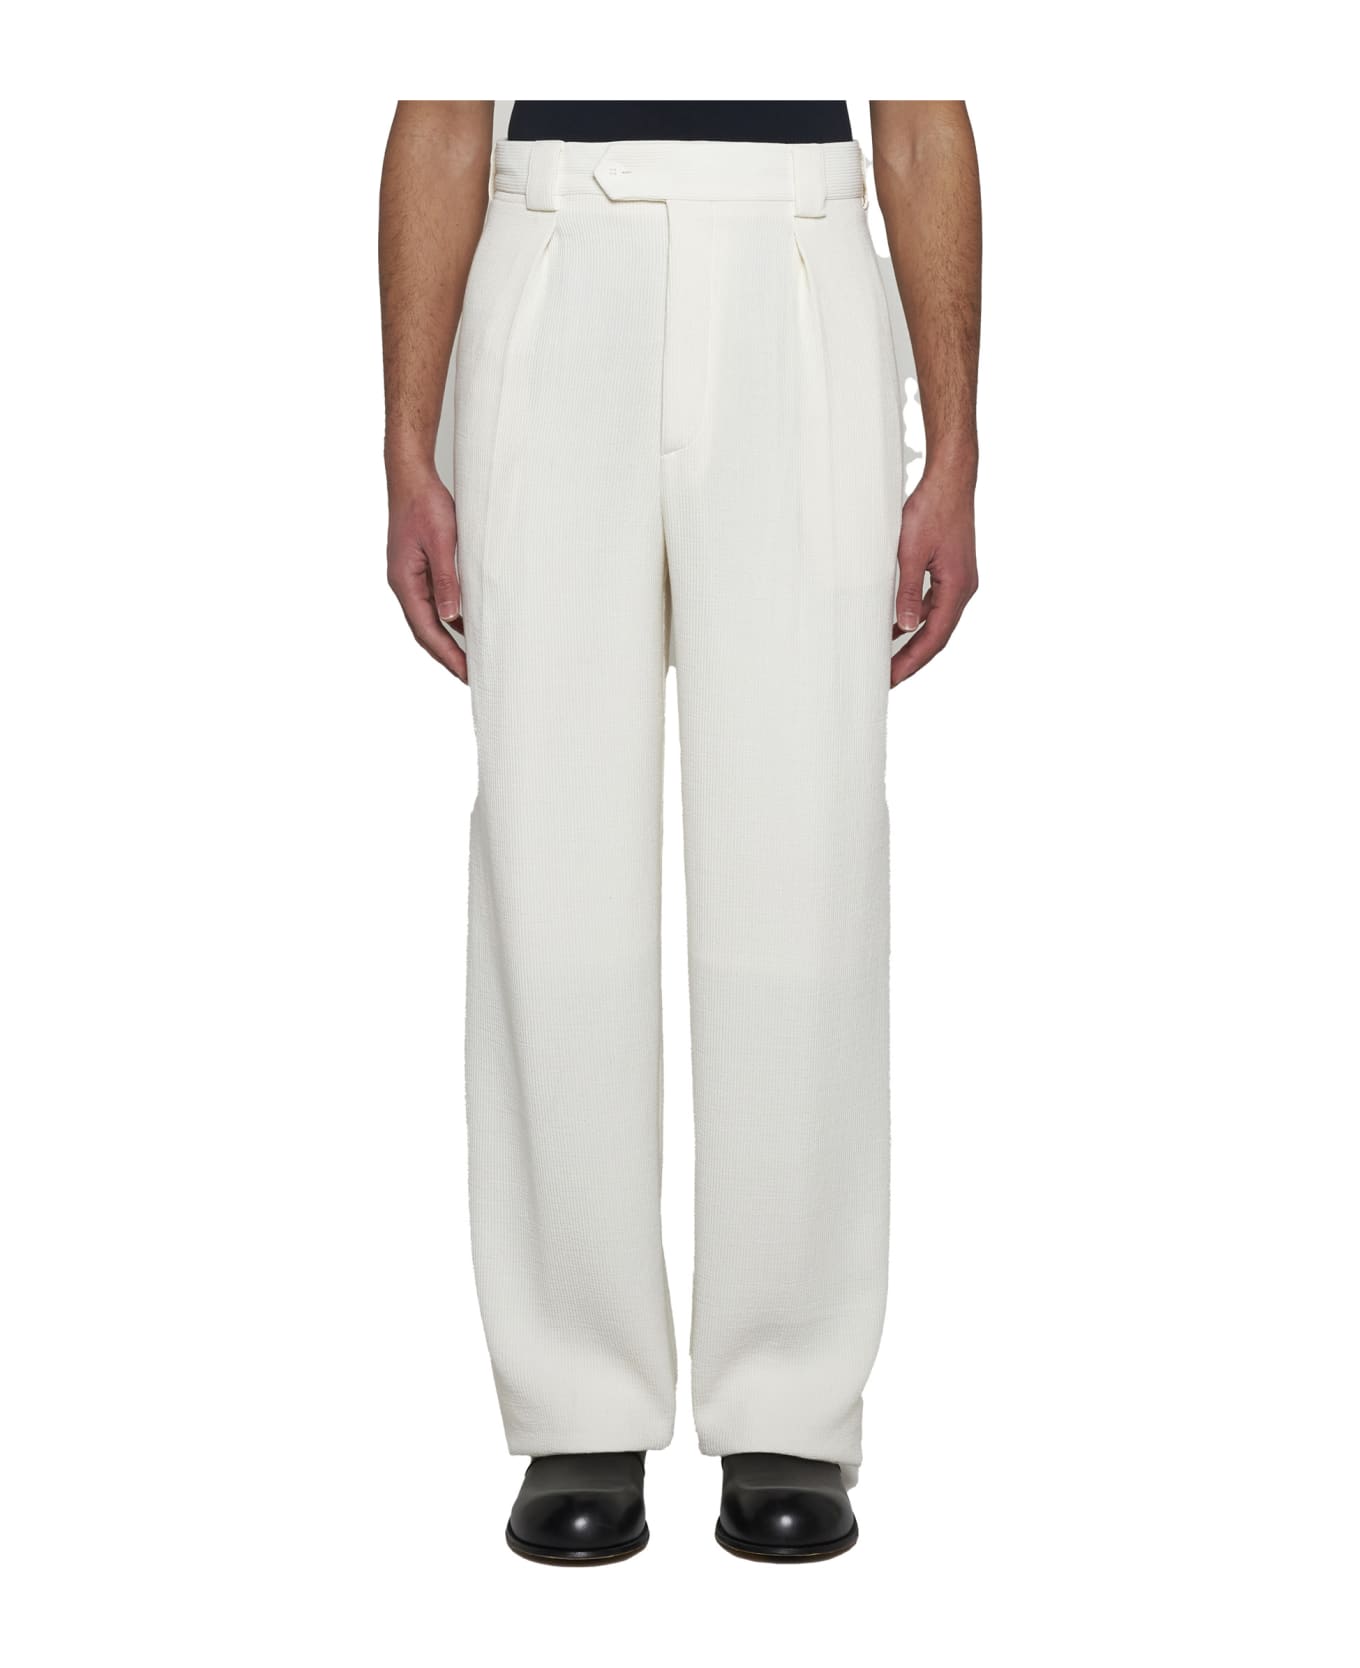 Giorgio Armani Pants - Brilliant white